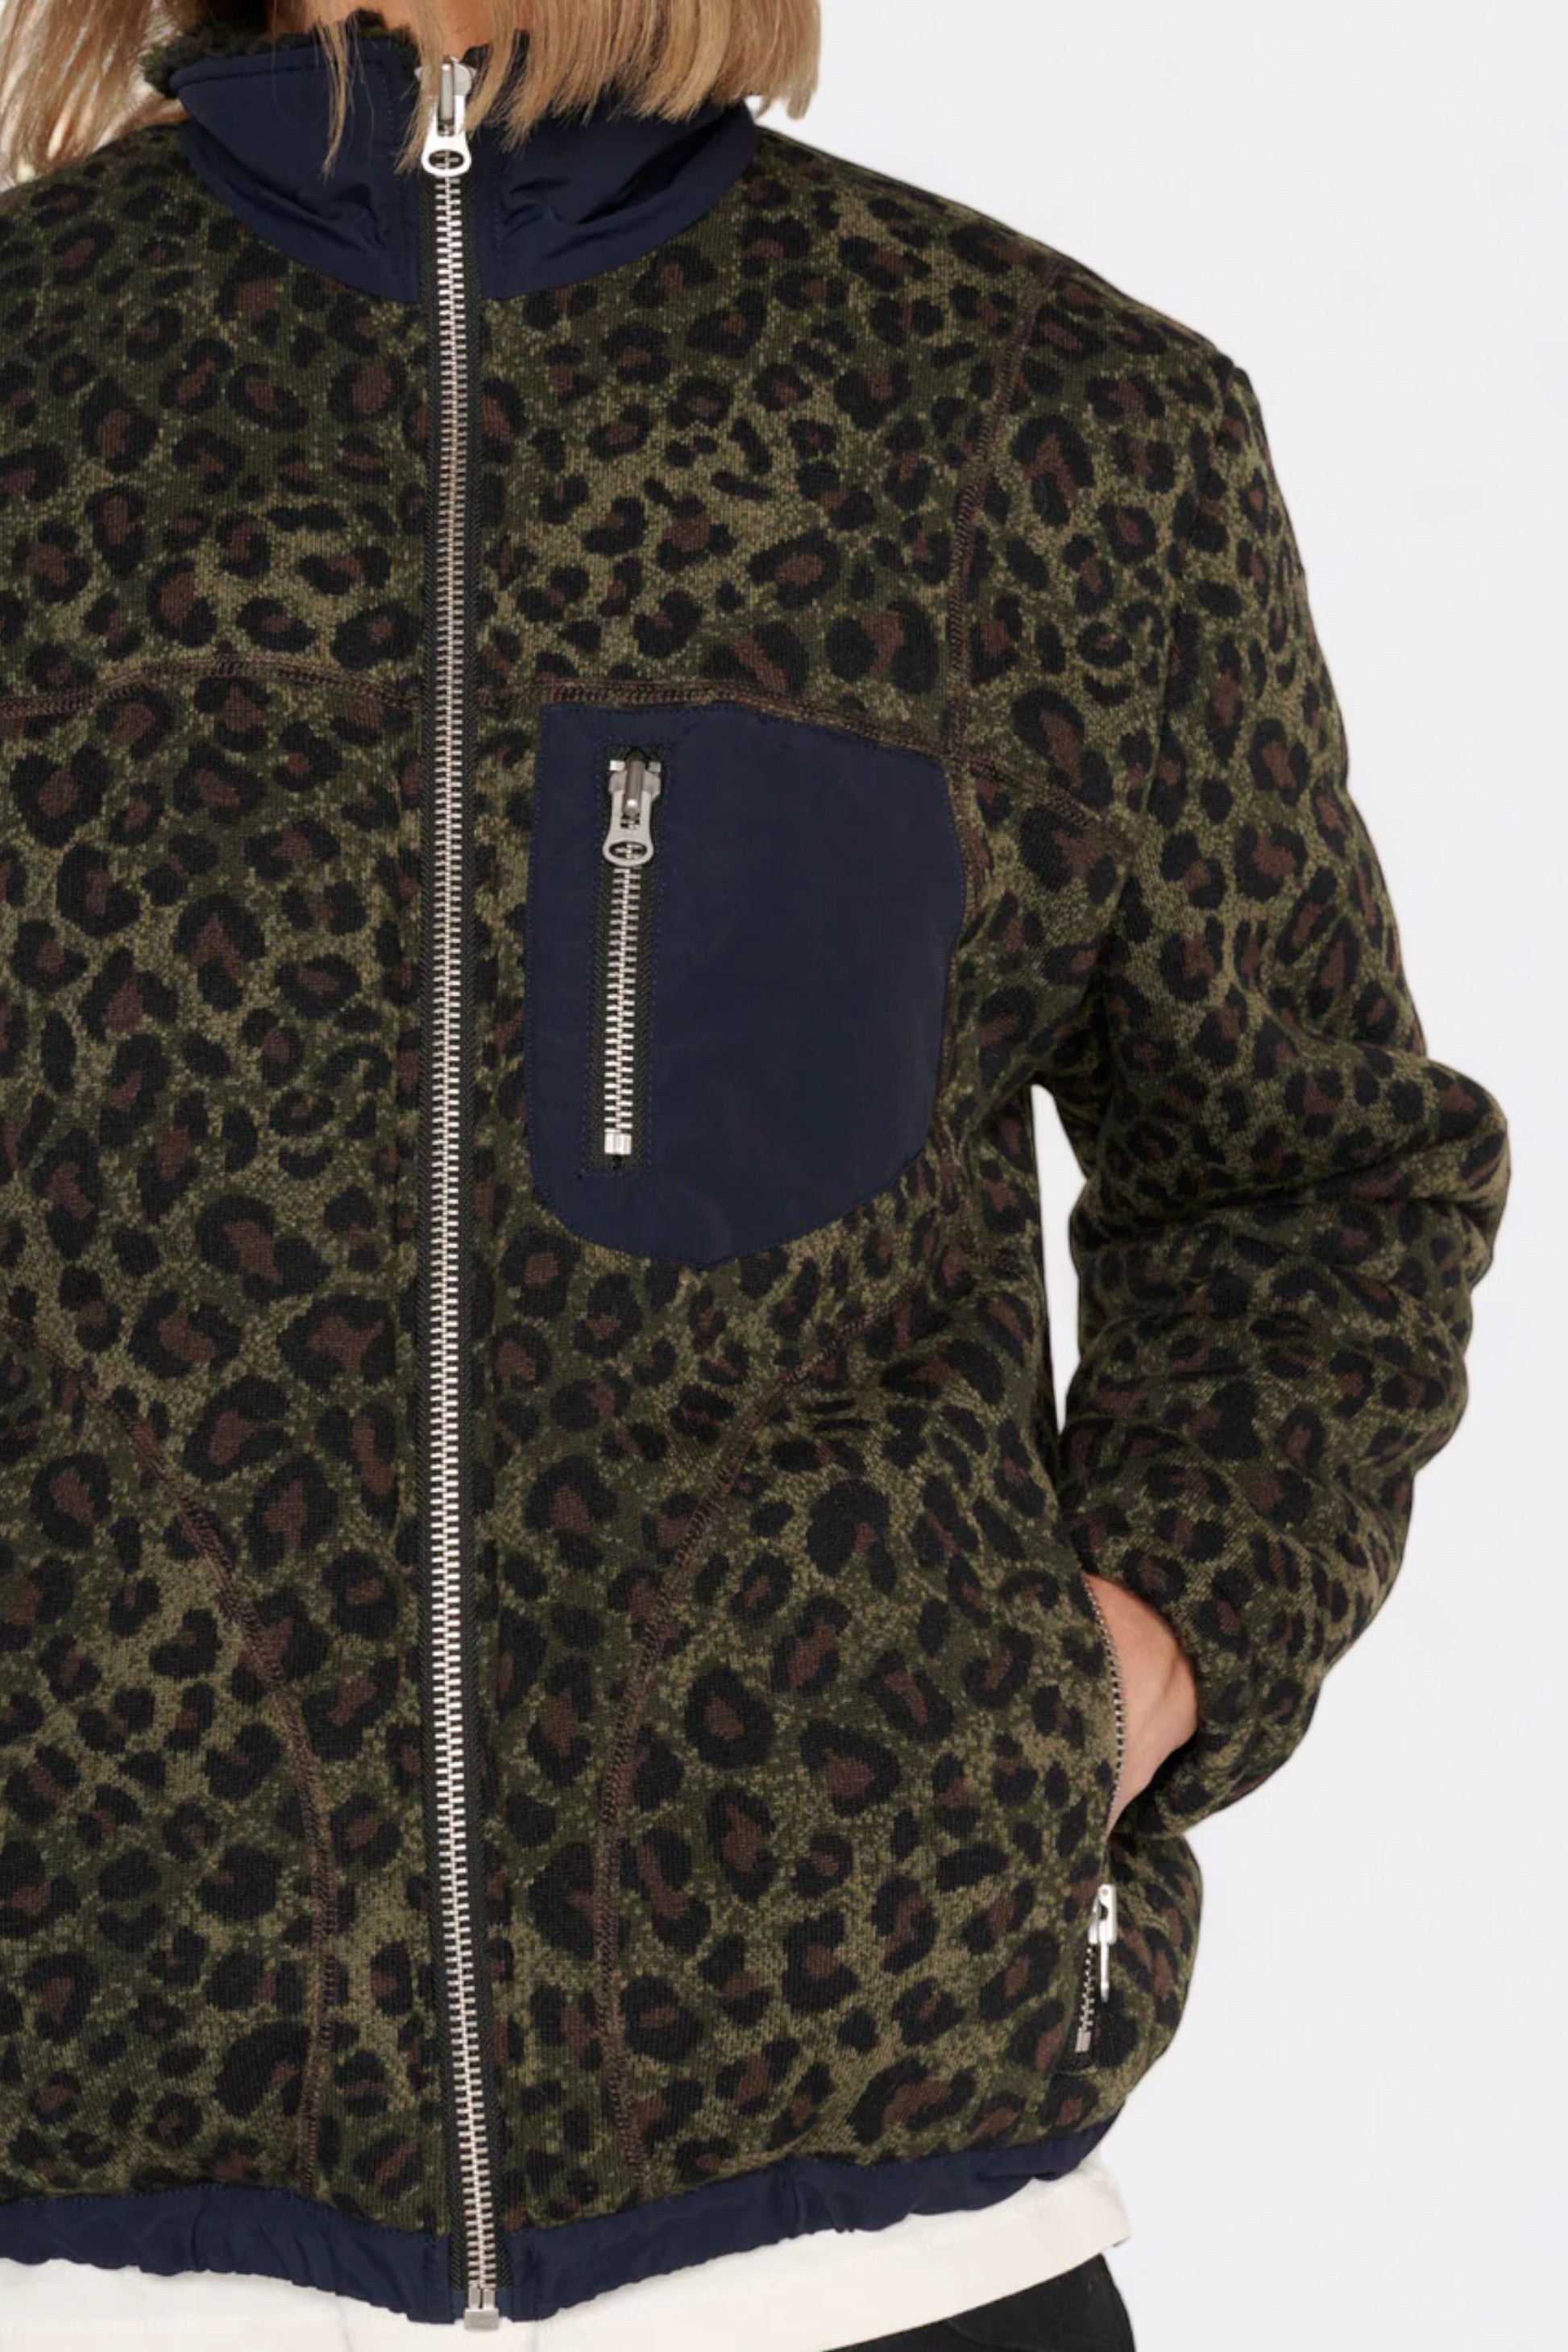 Brain Dead - Leopard Reverse Sherpa Jacket (Olive)